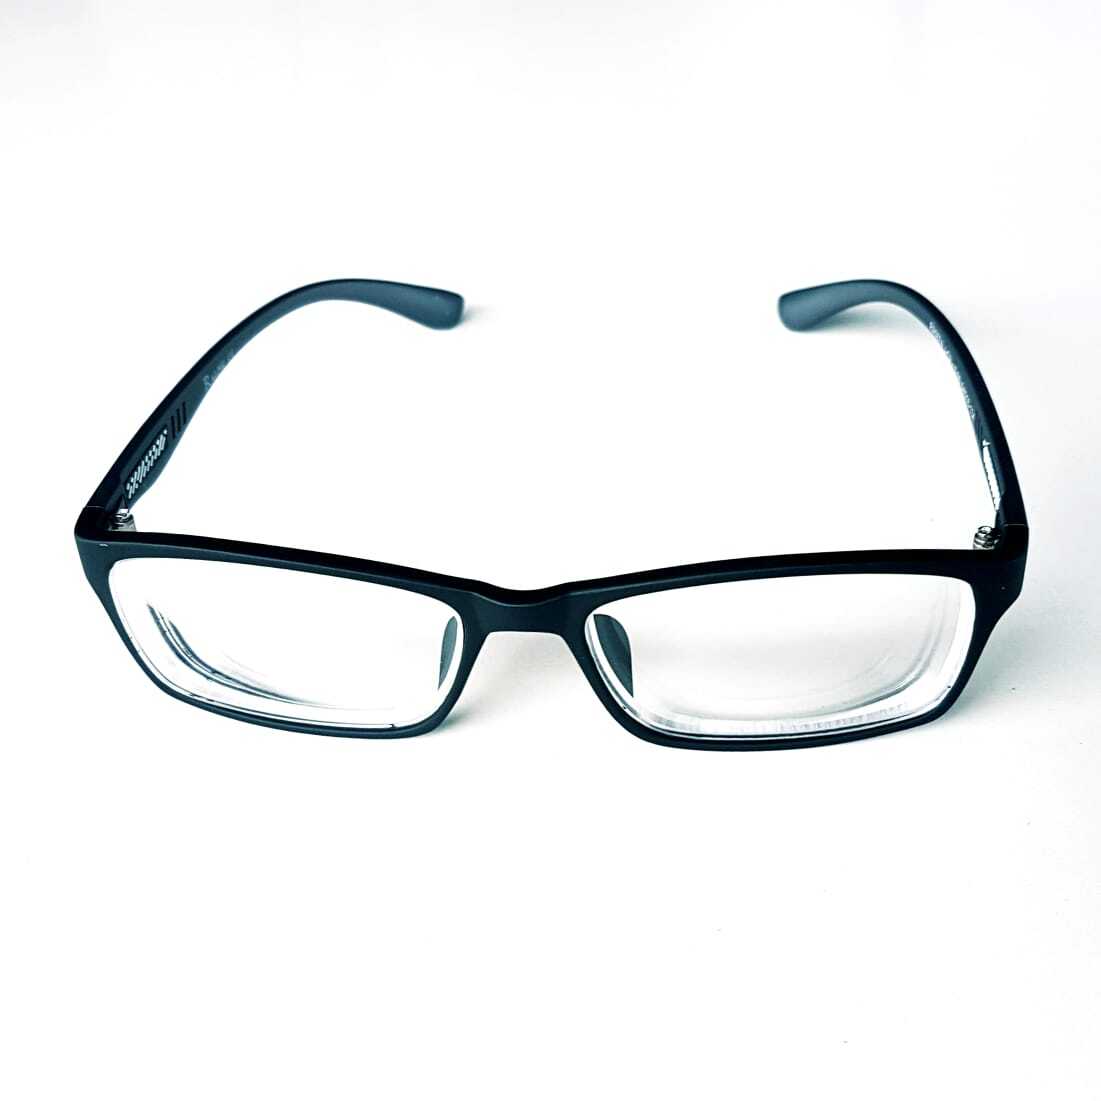 Очки 1.5 мужские купить. Корригирующие очки артикул: fm807 c2 2. Очки корригирующие арт.1082. Очки корригирующие moct 2054 диоптрии +1.5. Оправа Podium 0158 c1.